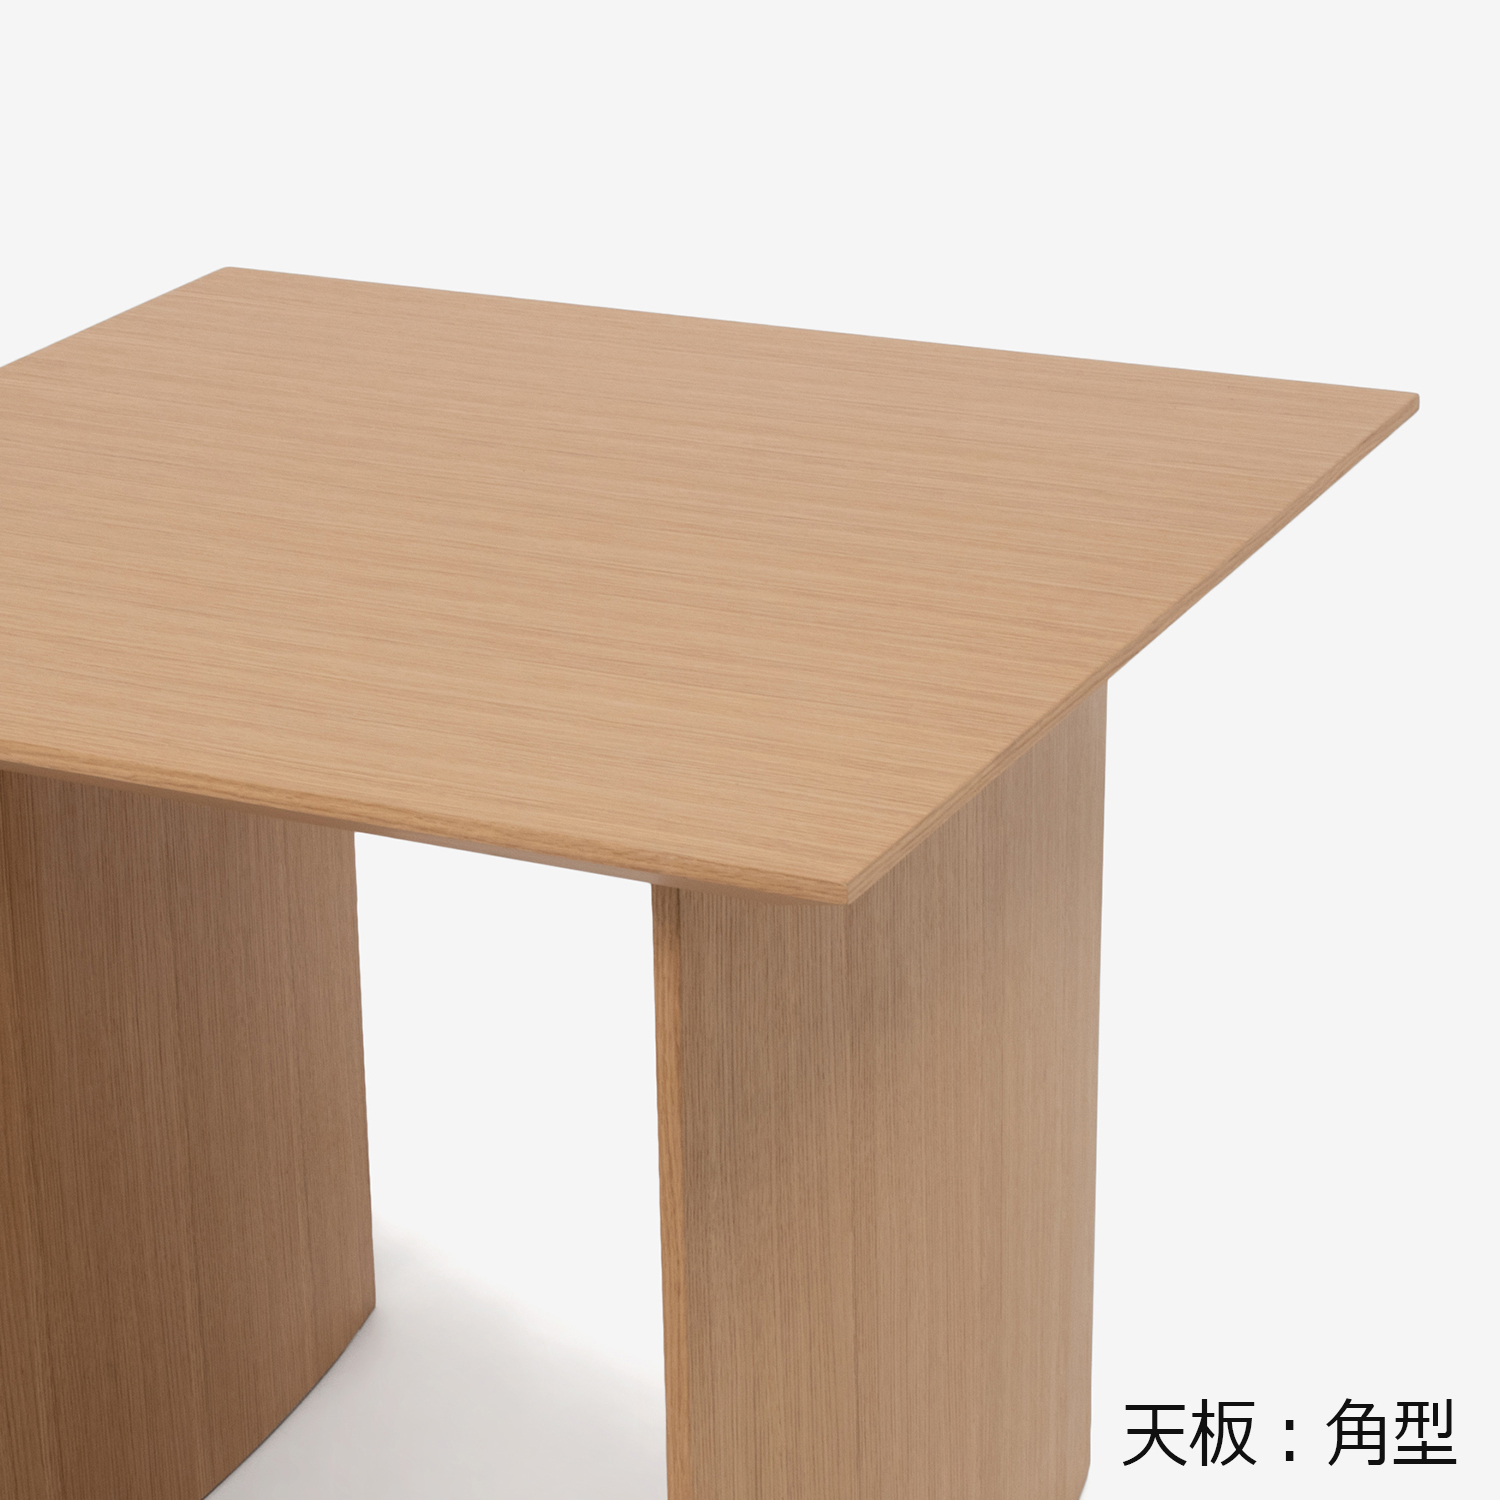 ダイニングテーブル「ジャスト」幅85cm オーク材ホワイトオーク色 天板角型 パネル脚【決算セールのため30%OFF】